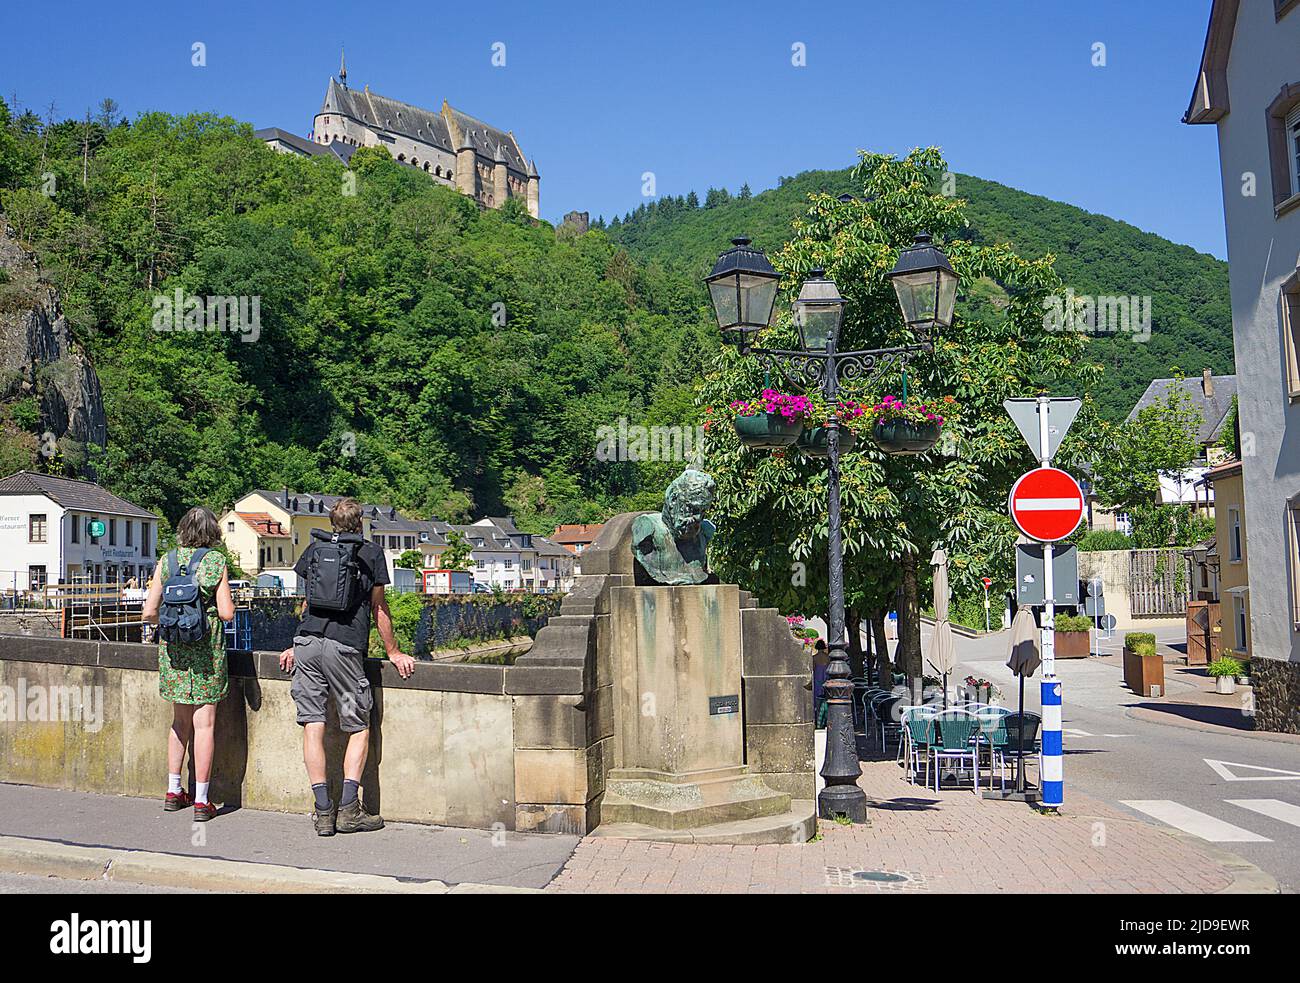 Blick von unserer Brücke bis zur Burg, Büste von Victor Hugo und alte Straßenlaterne, Dorf Vianden, Kanton Vianden, Luxemburg, Europa Stockfoto